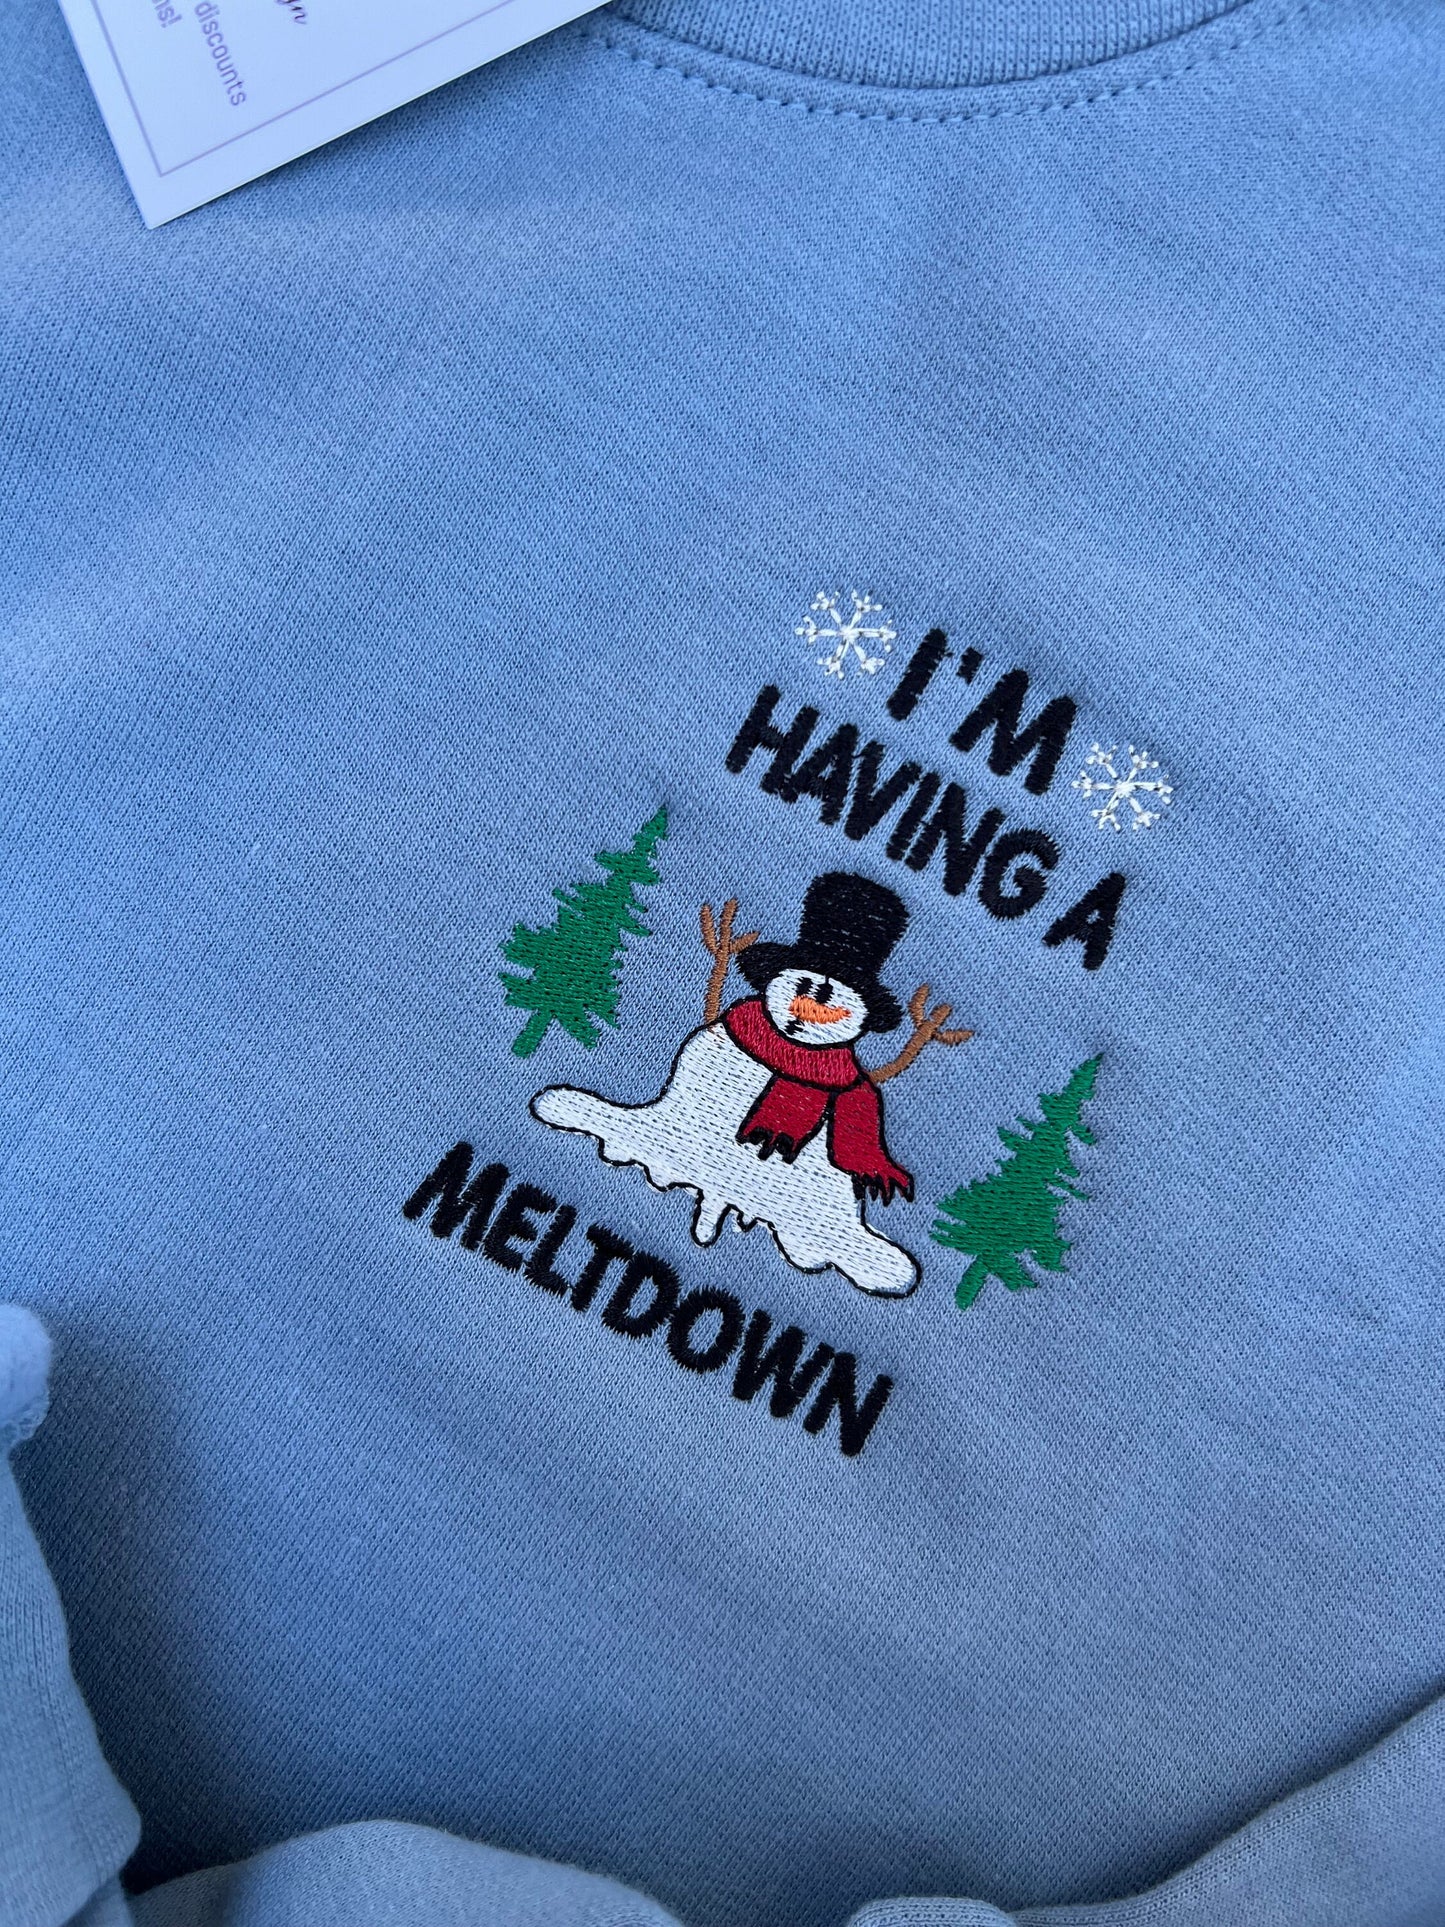 Christmas Sweatshirt Embroidered Christmas Shirt Funny Christmas Gift Snowman